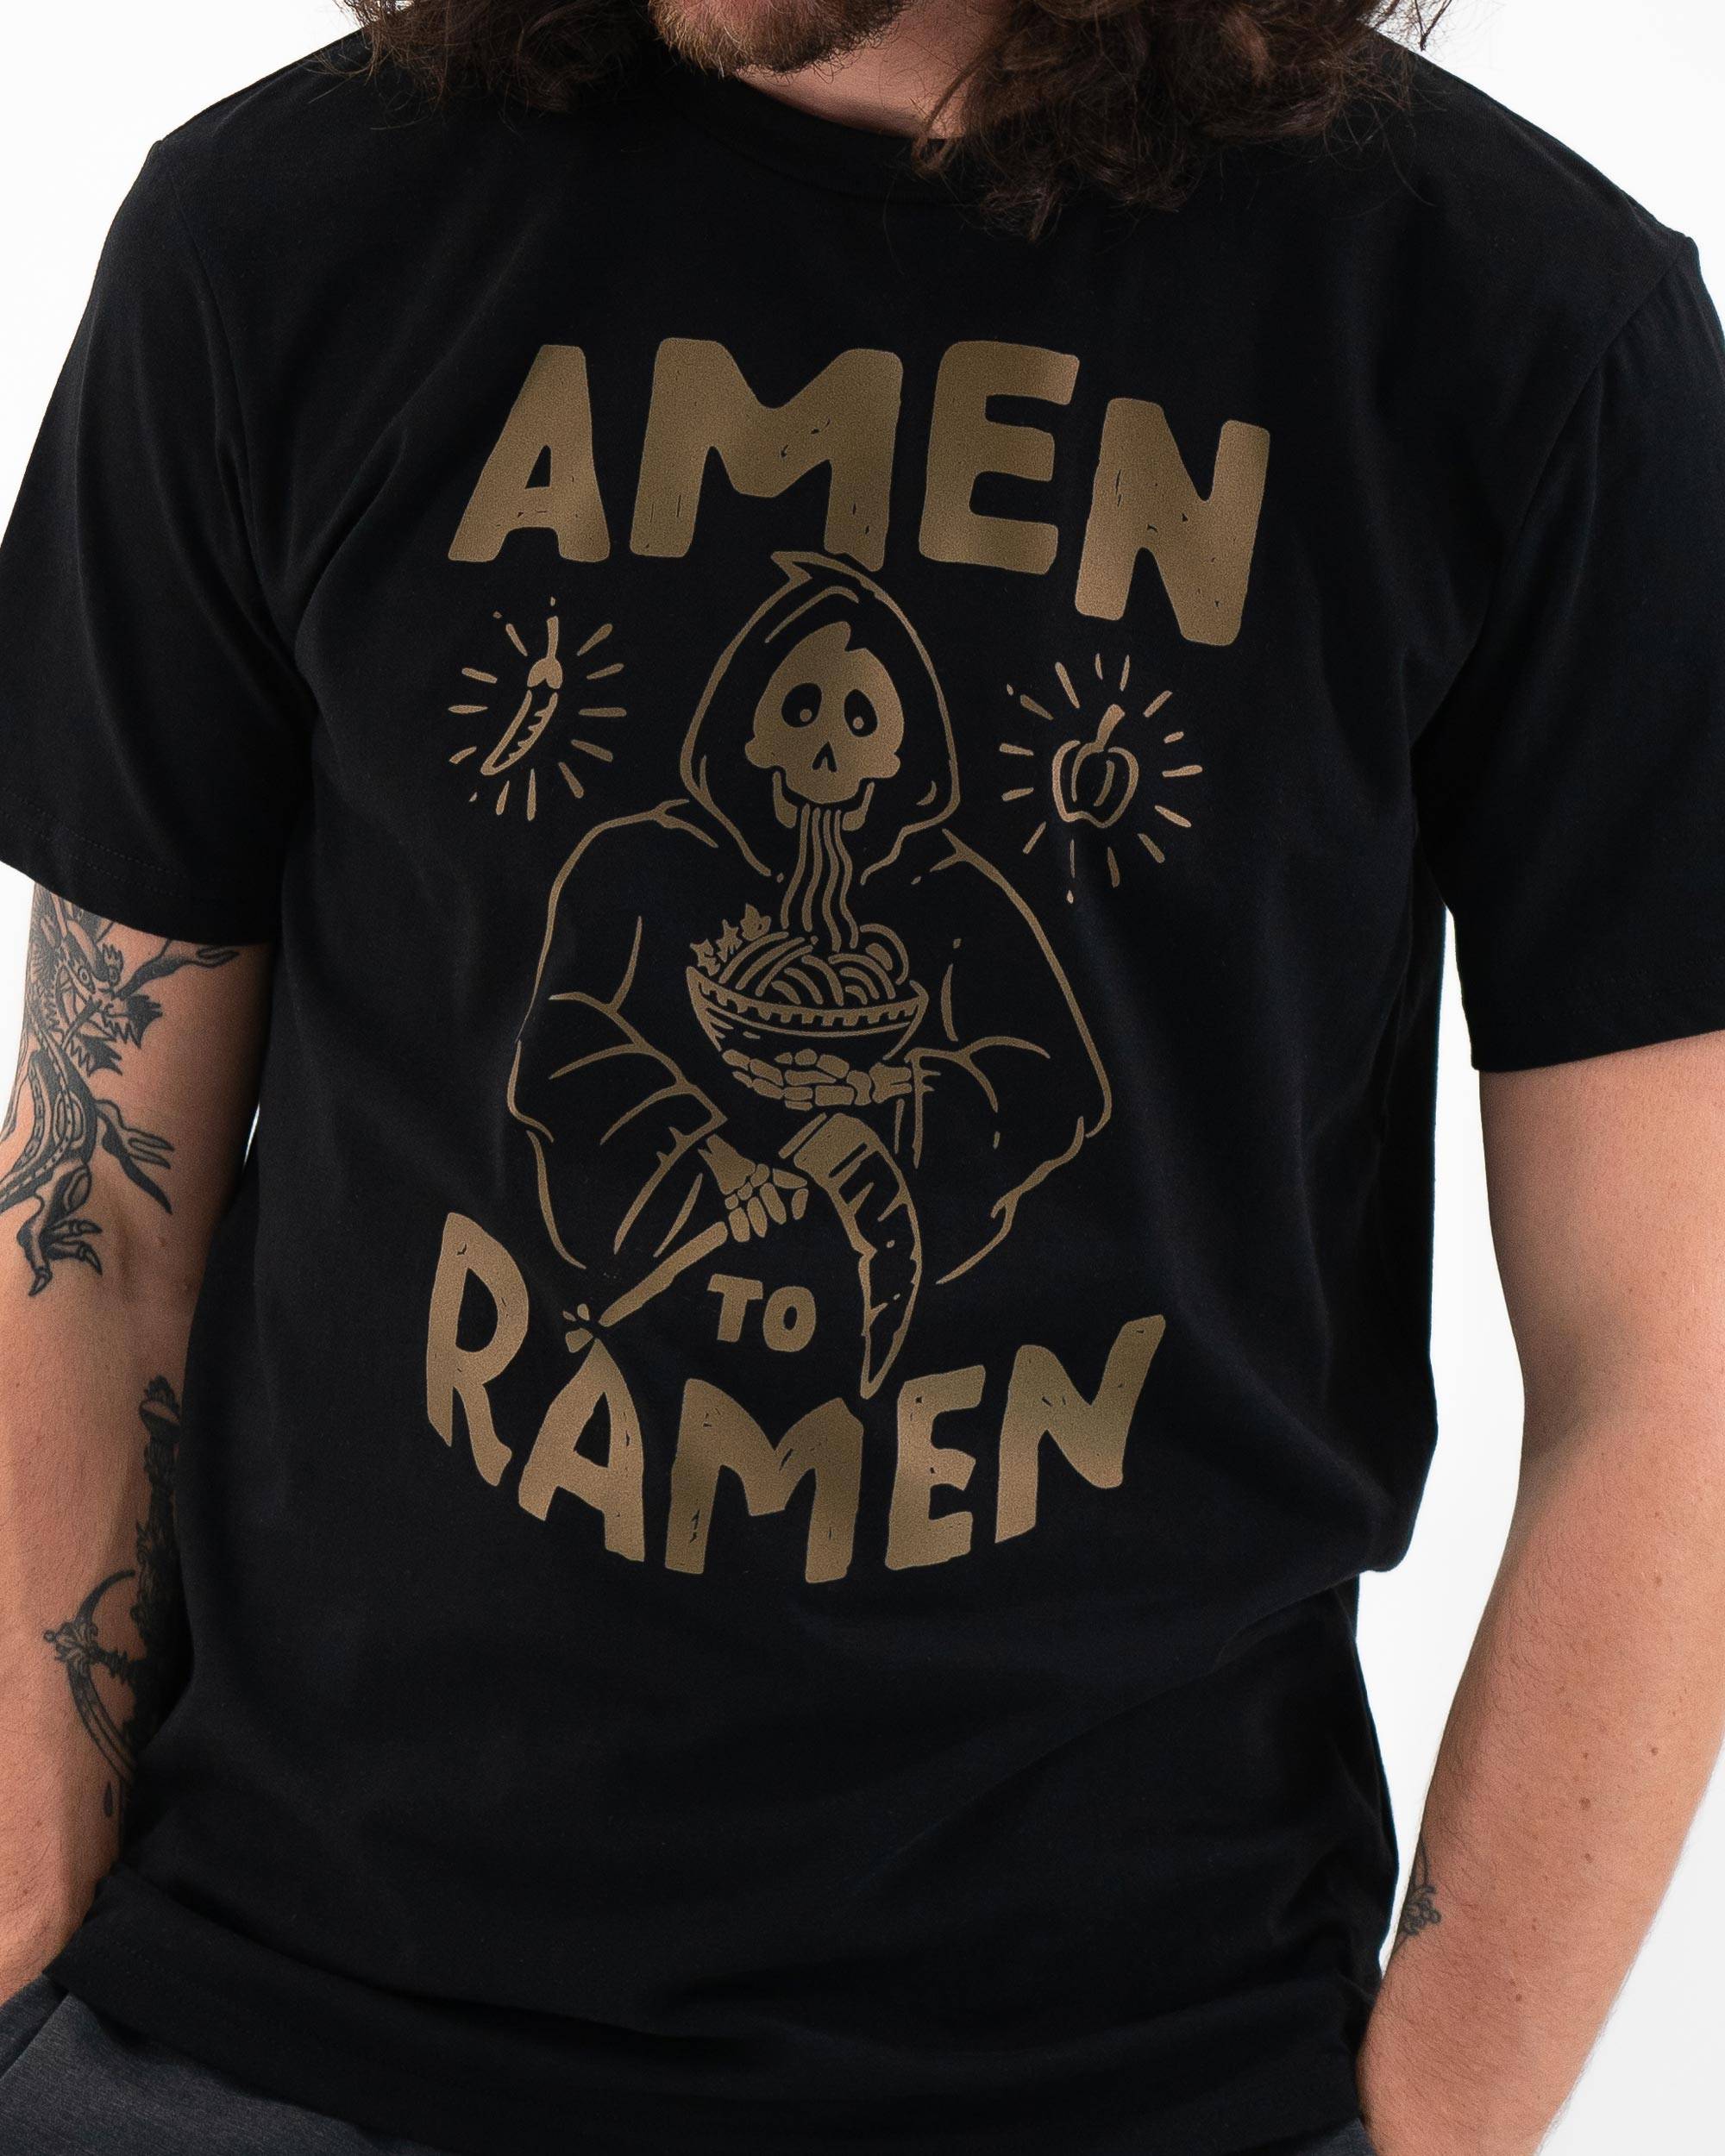 T-shirt Amen to Ramen de couleur Noir par Skitchism